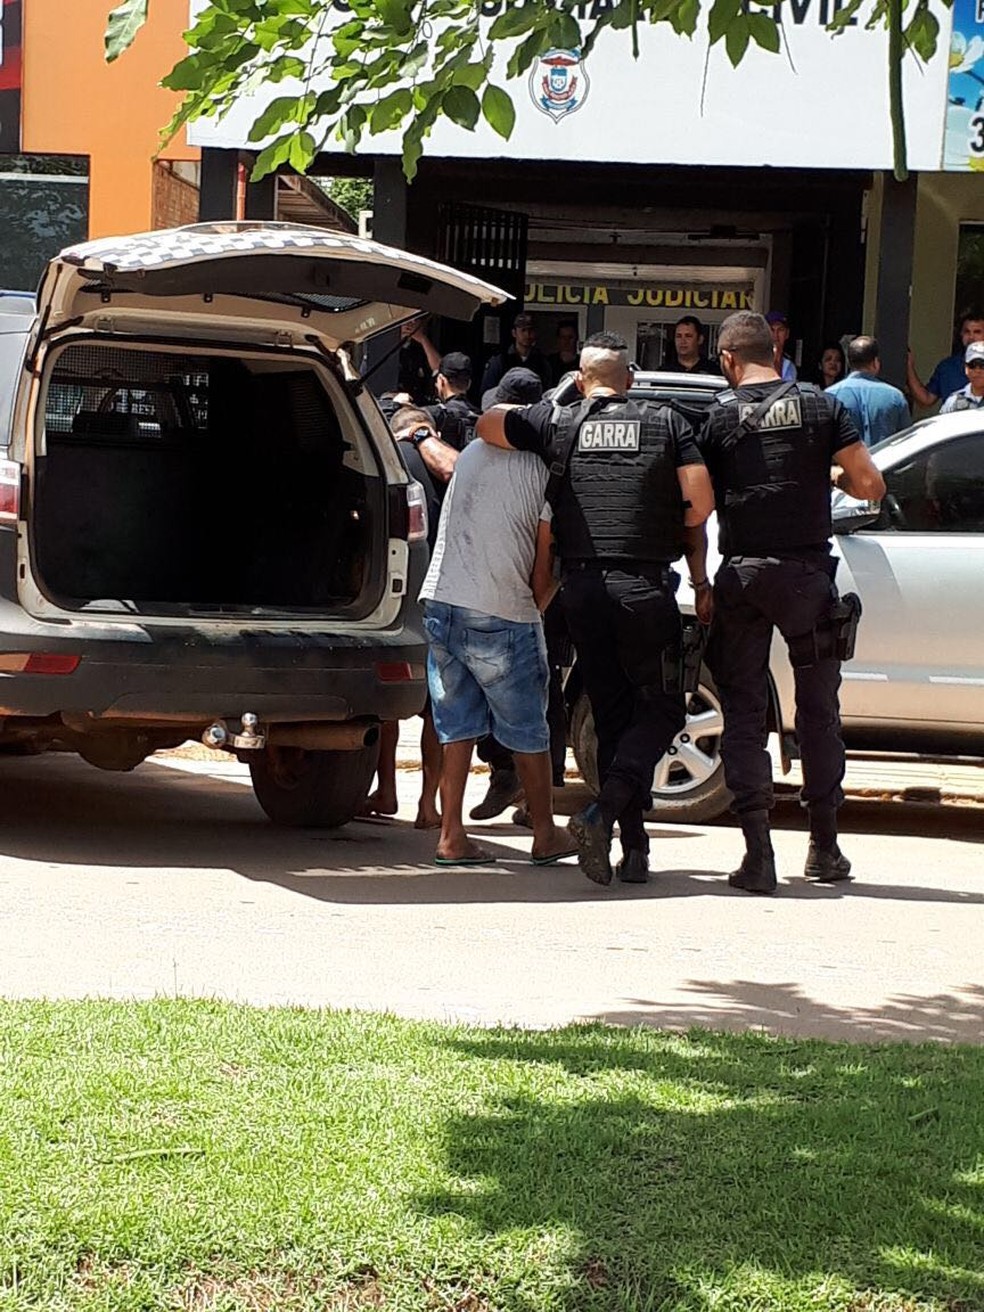 Suspeitos foram presos por policiais do Garra e estão sendo interrogados — Foto: Harlis Barbosa/Arquivo pessoal